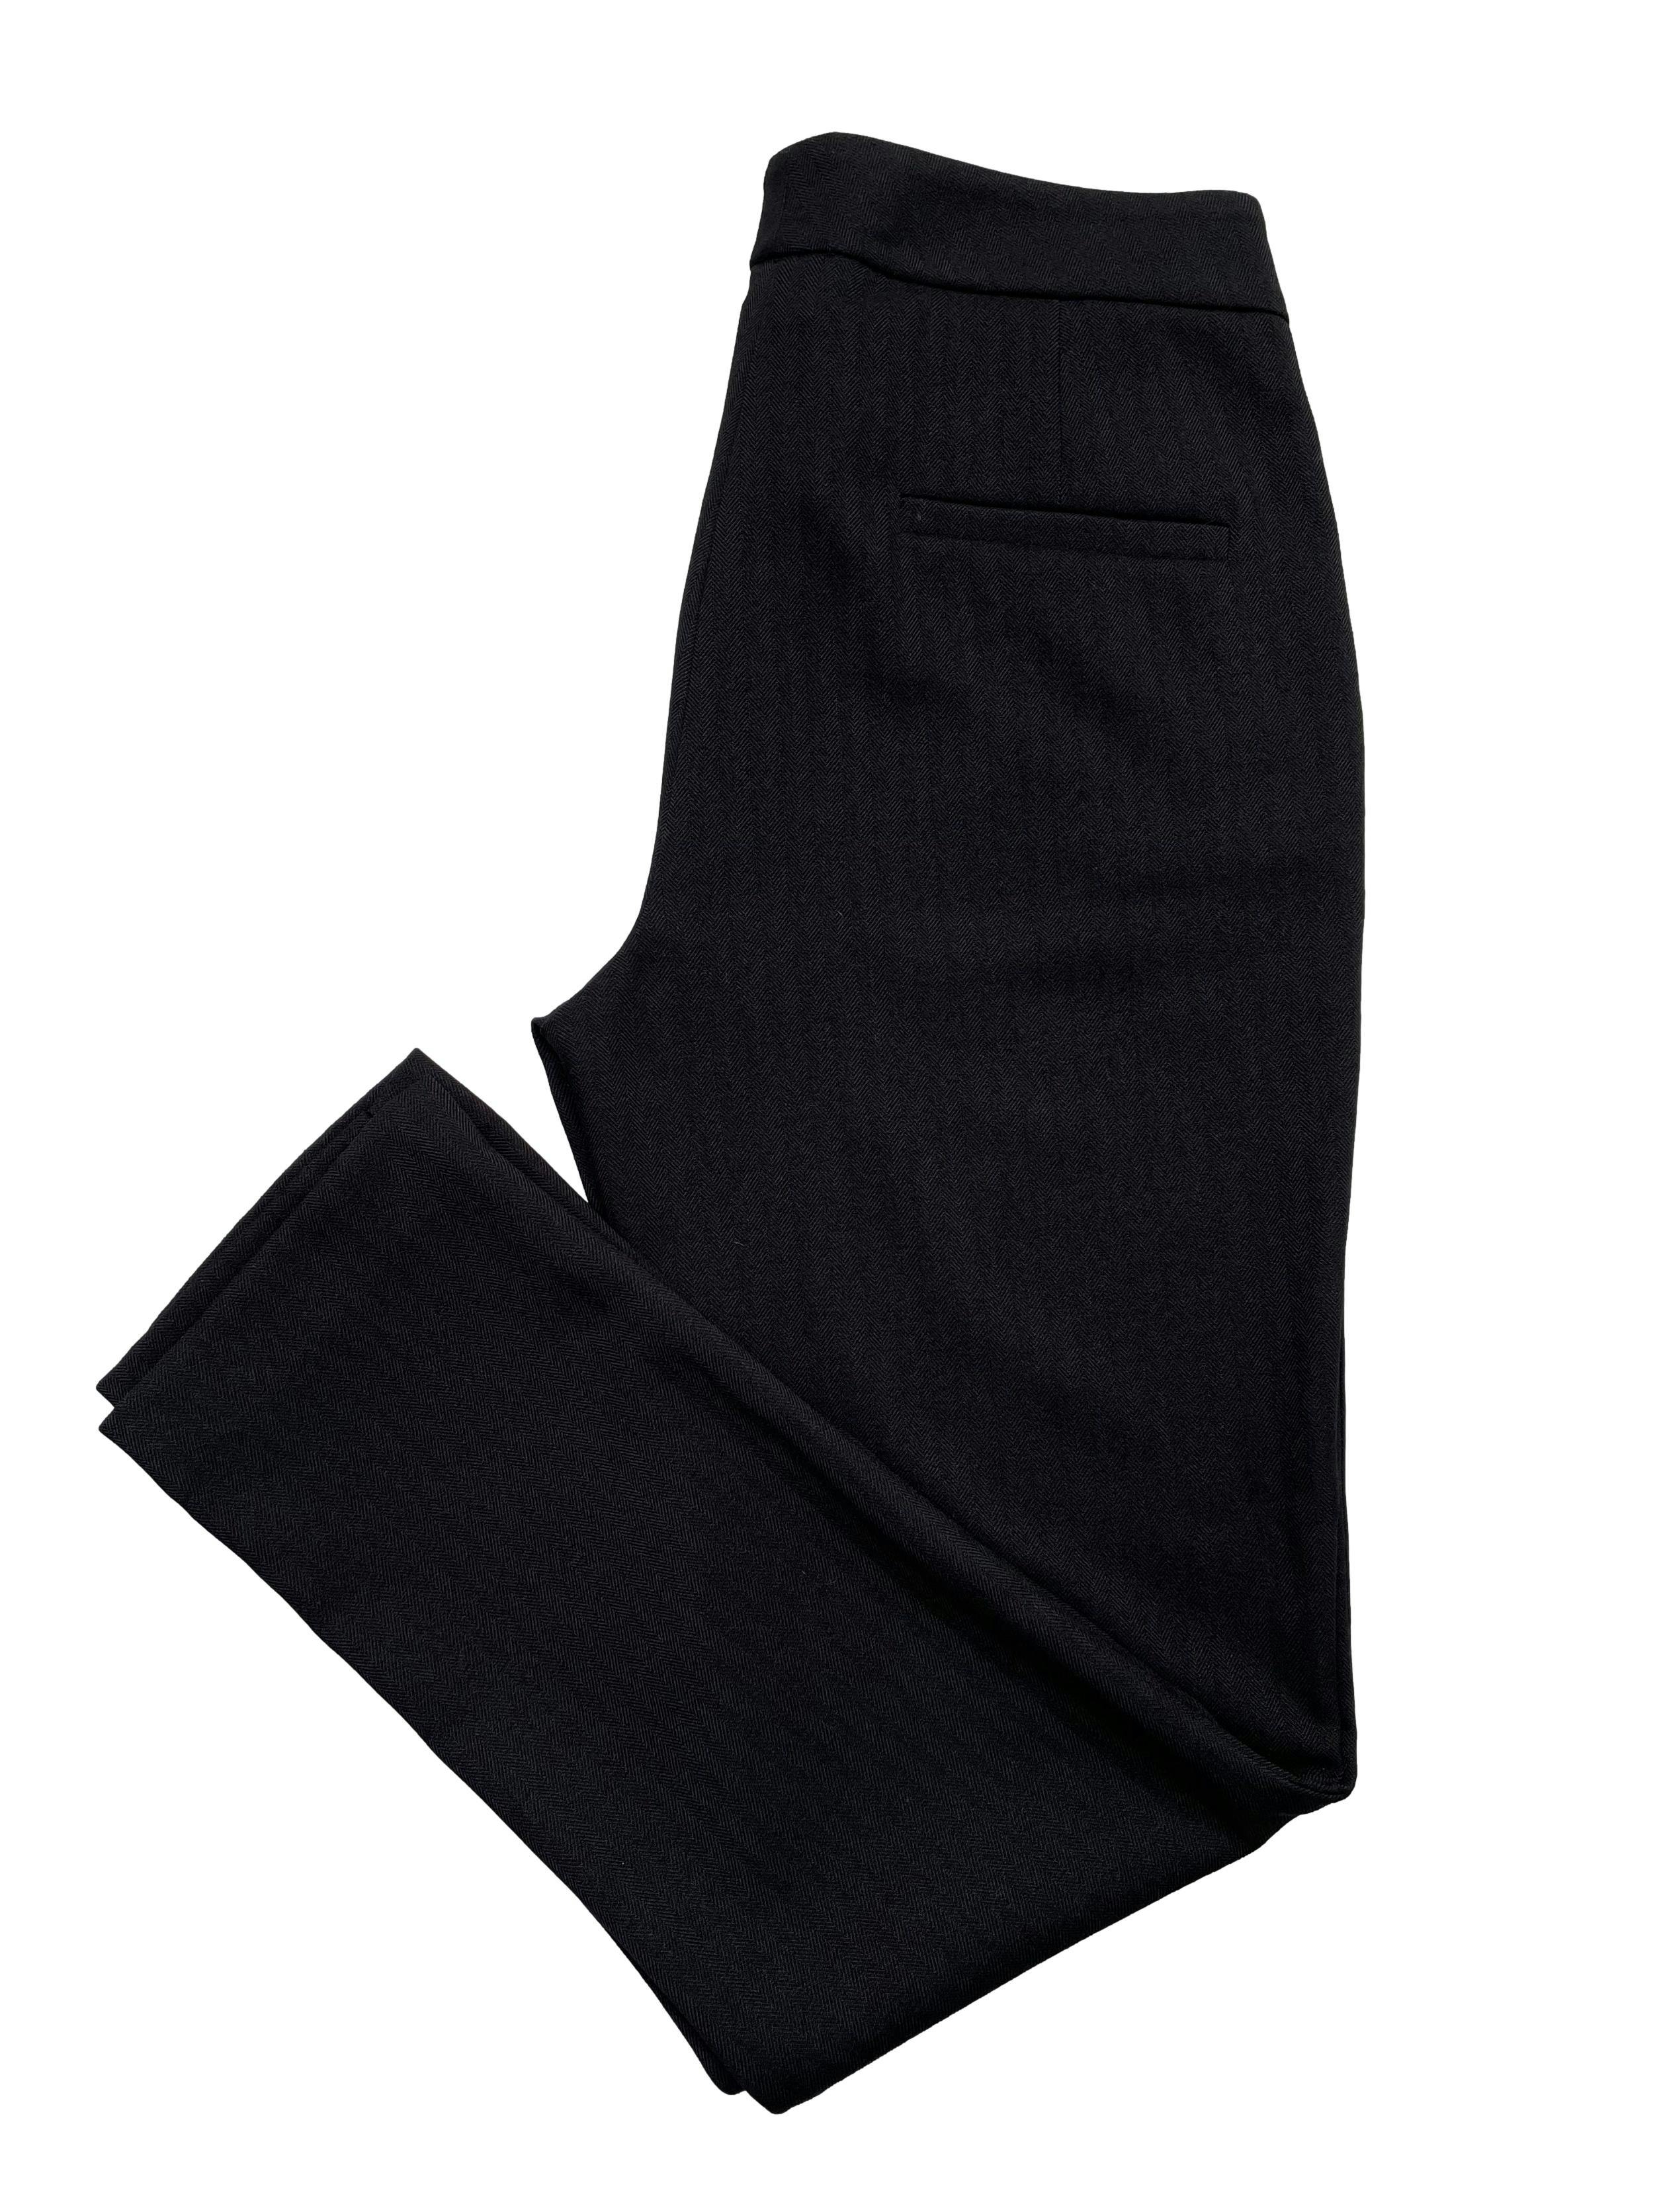 Pantalón Topitop negro corte slim, estilo formal con bolsillos laterales. Cintura 75cm Largo 97cm.